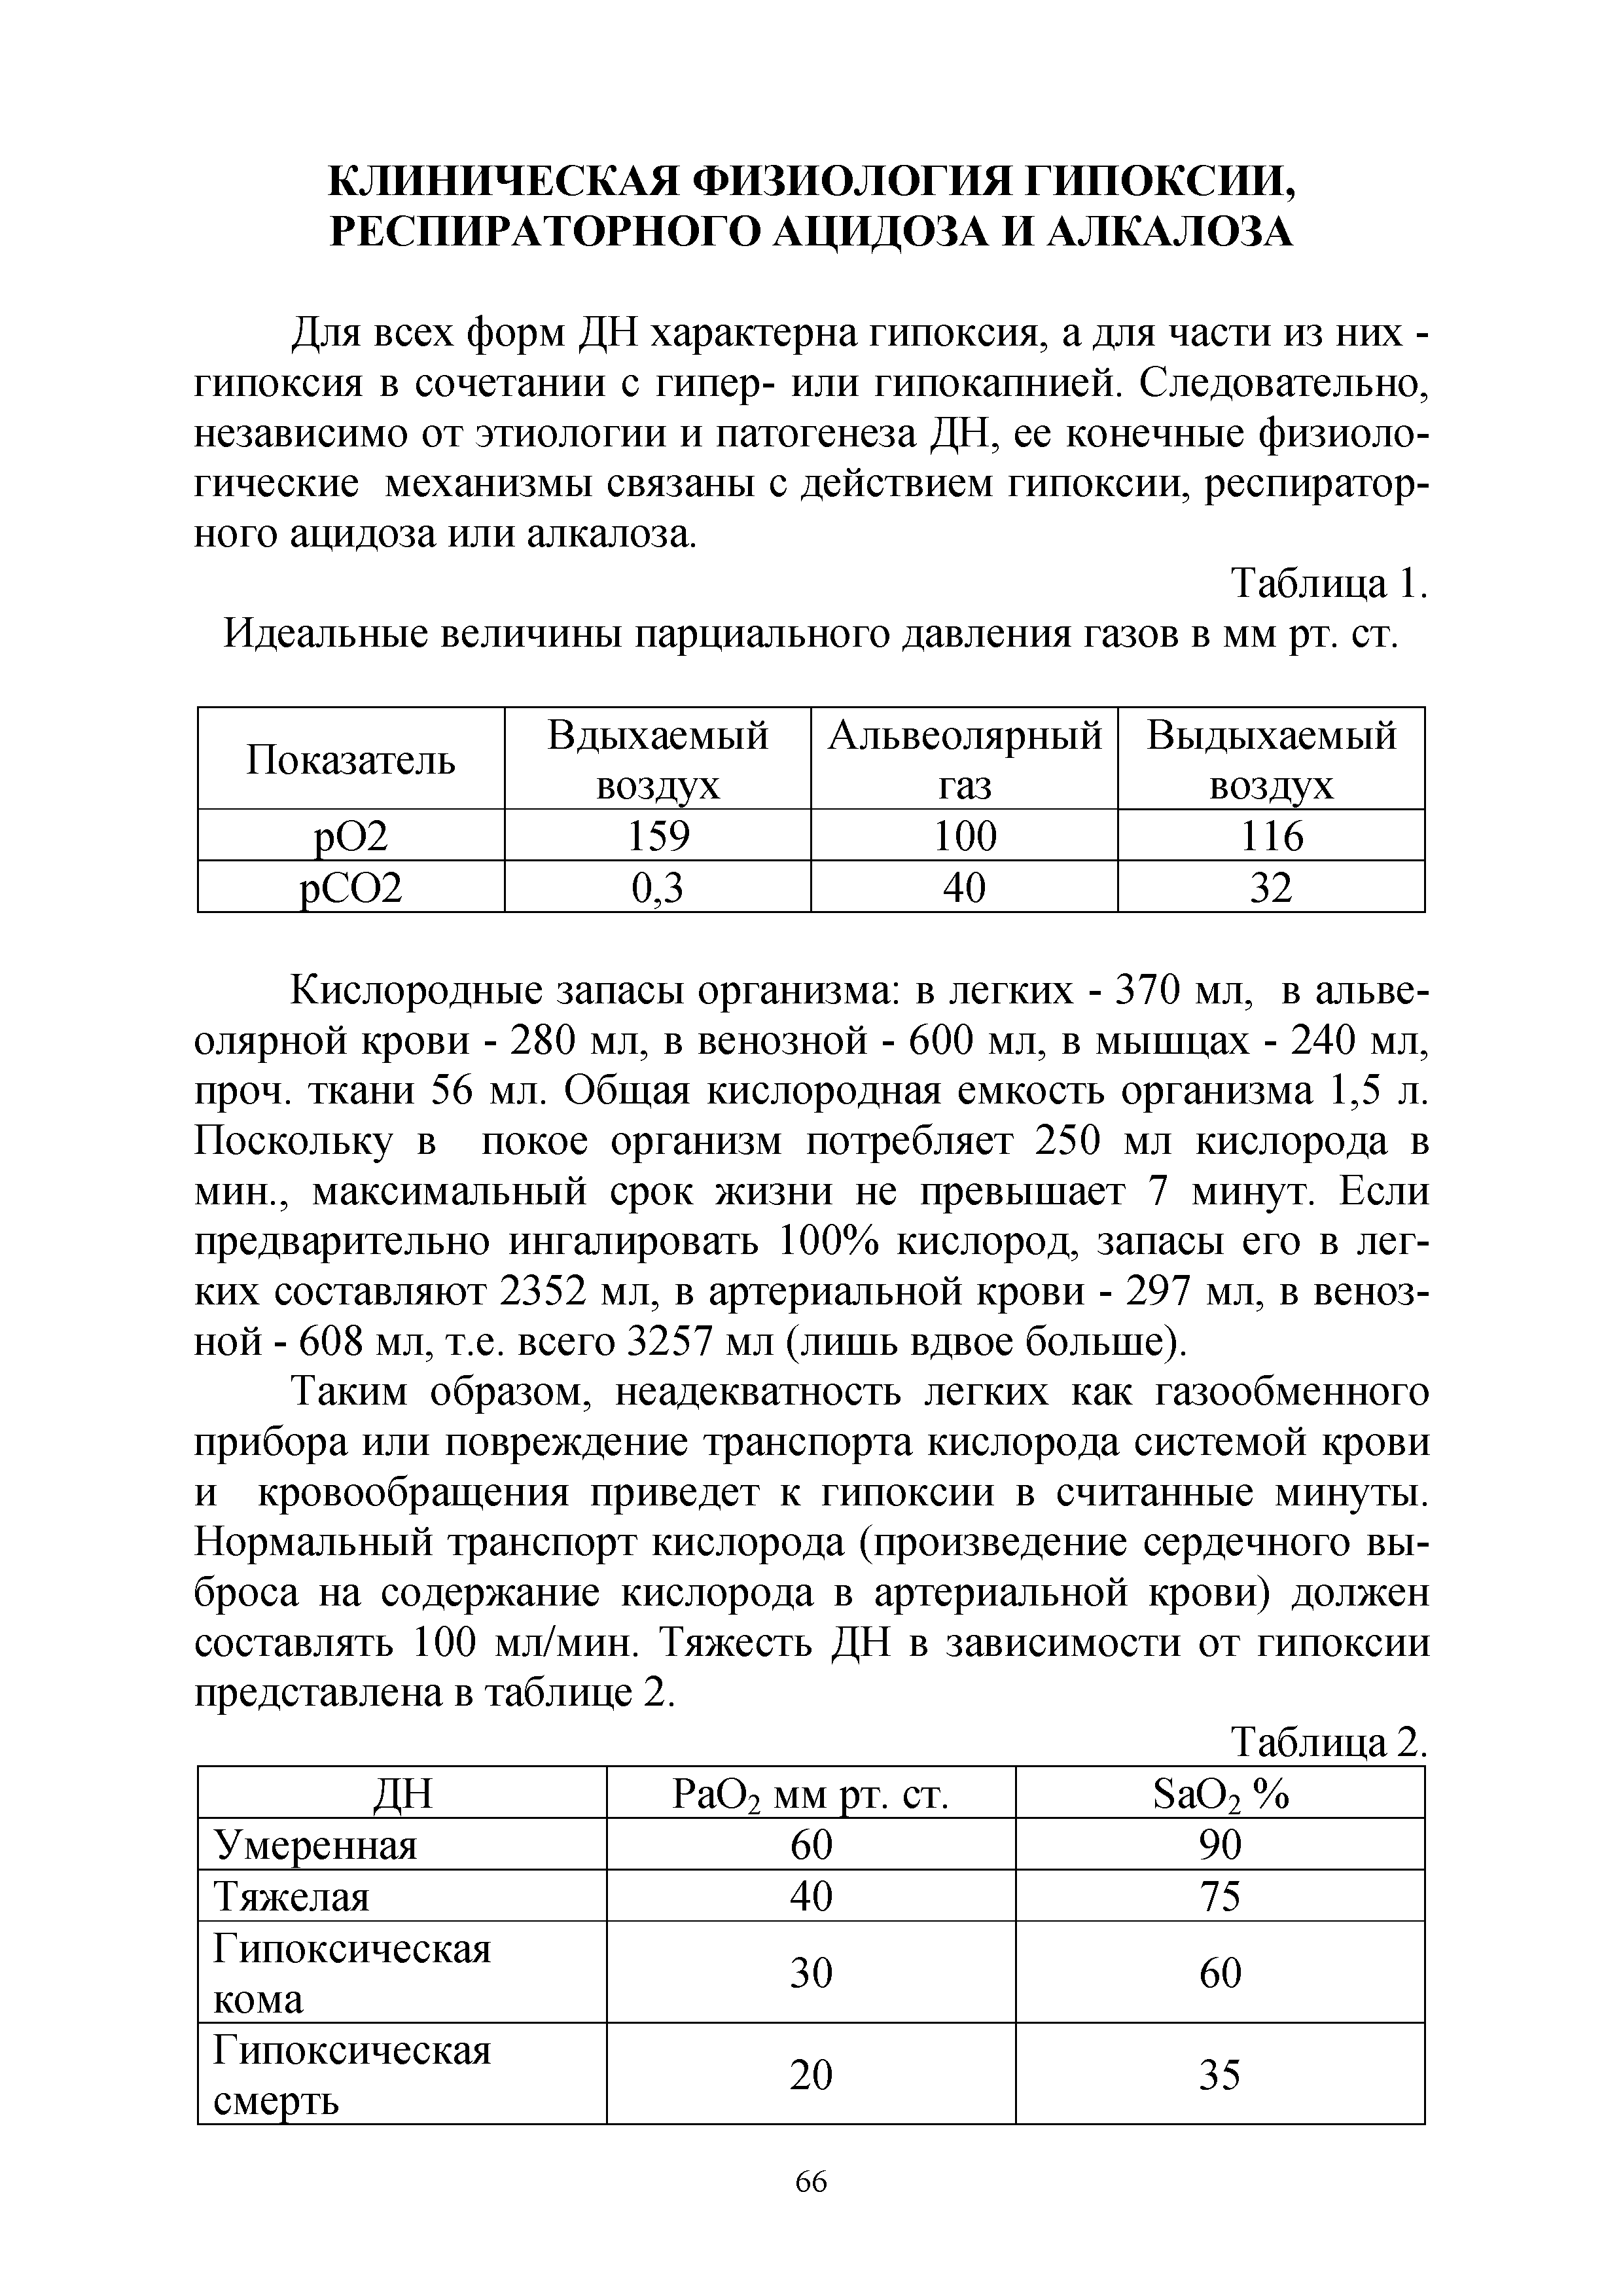 Таблица 1. Идеальные величины парциального давления газов в мм рт. ст.